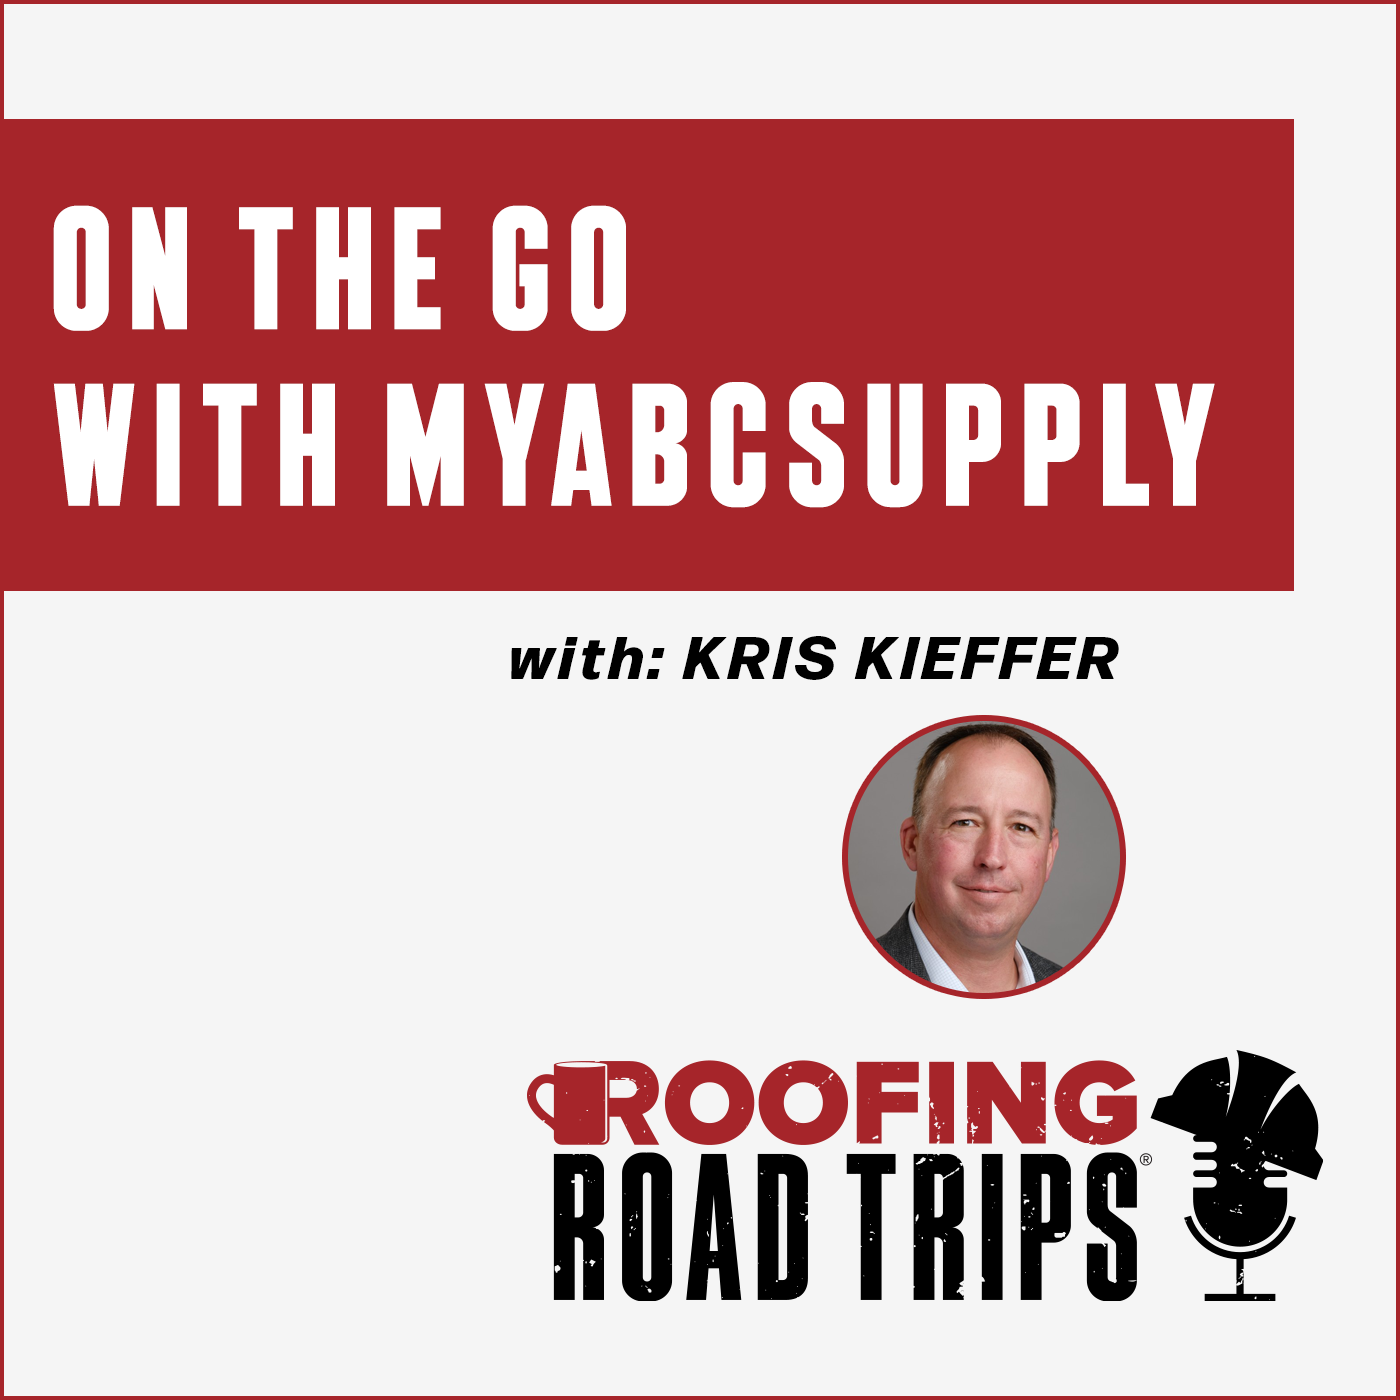 Kris Kieffer - On the Go With myABCsupply